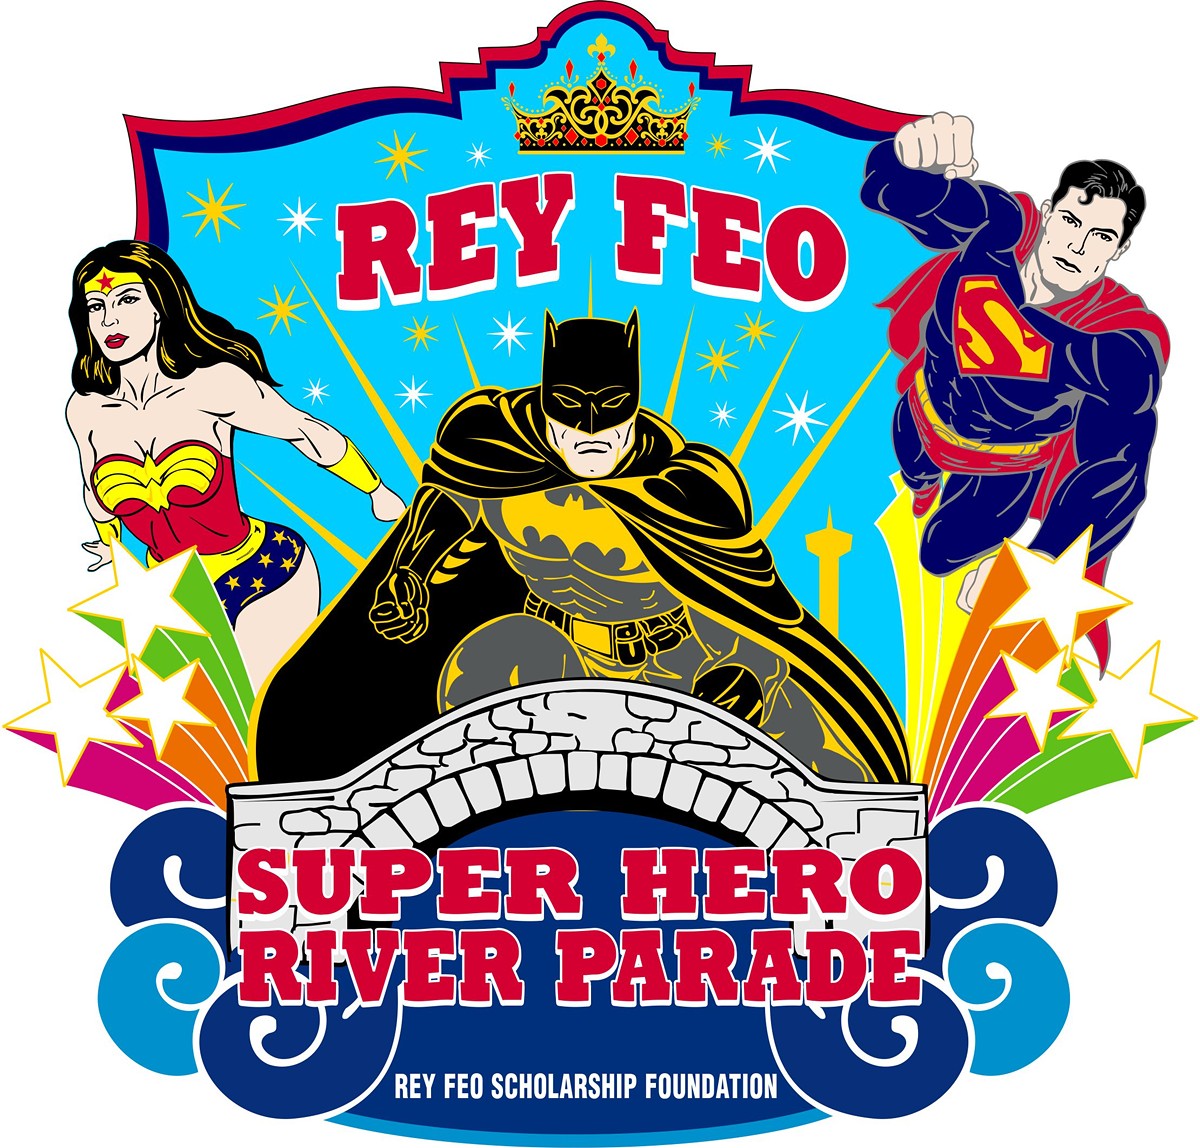 Rey Feo Super Hero River Parade